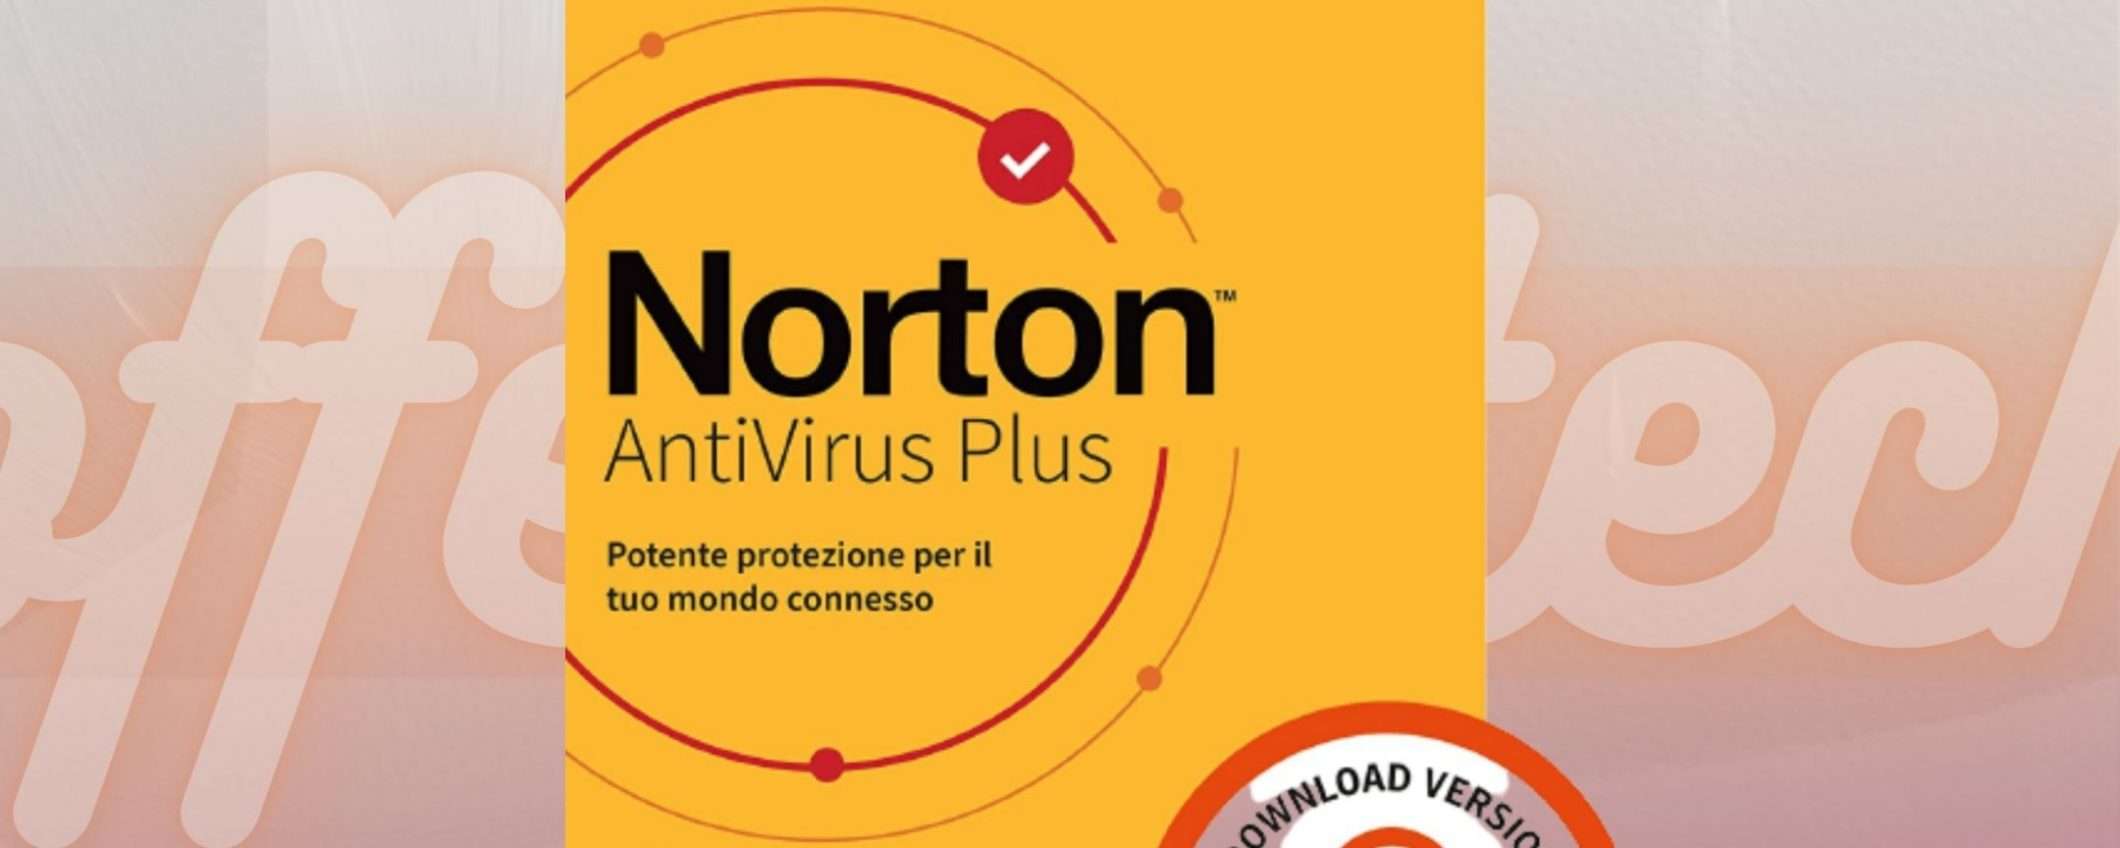 Norton Antivirus Plus 2021: prezzo esclusivo e download immediato